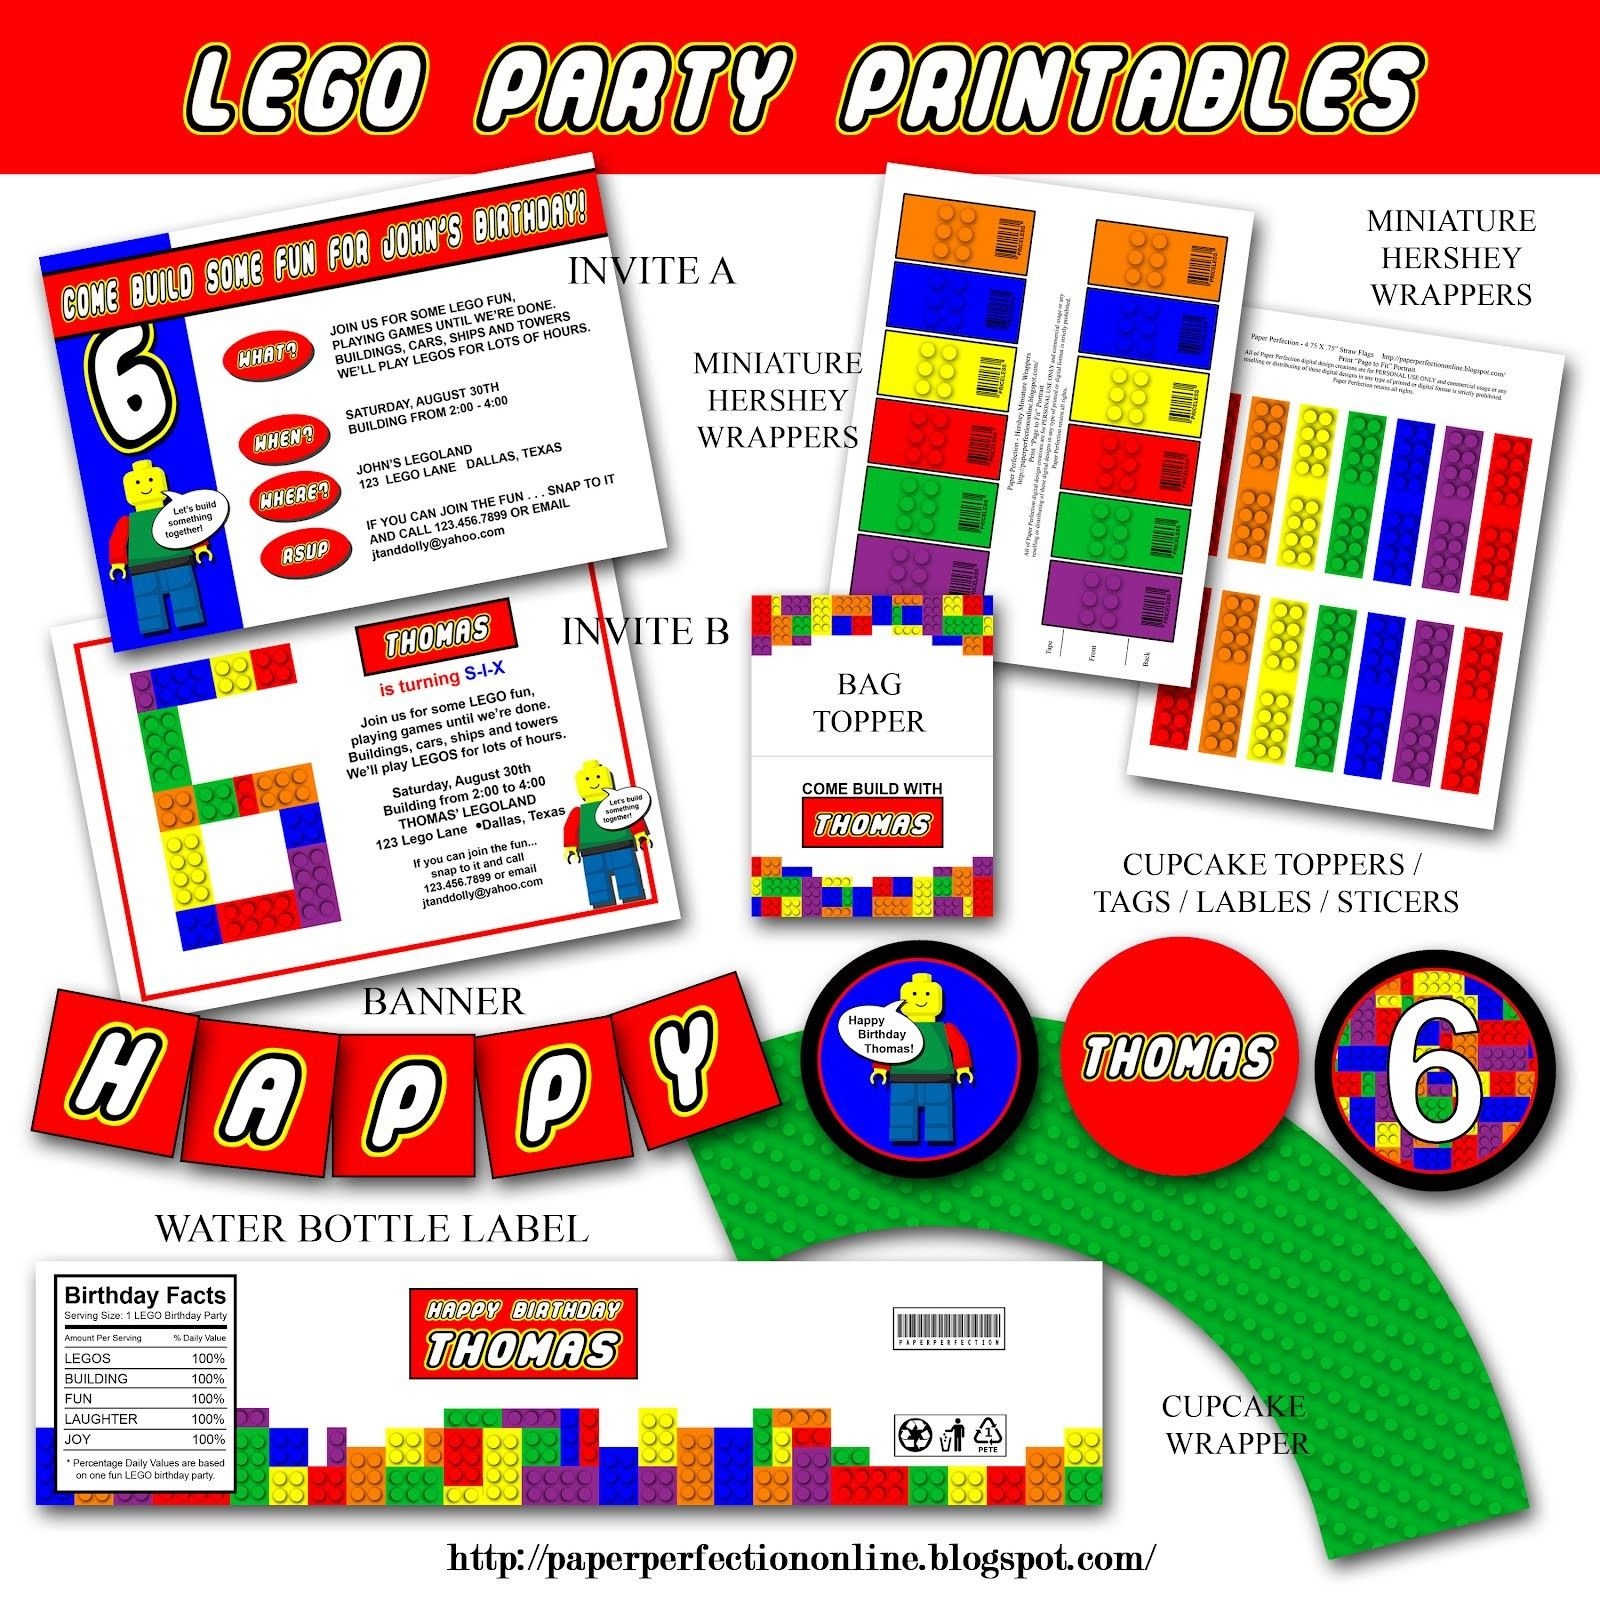 Pinmaria Alvarez On Legos | Lego Party Invitations, Lego - Lego Party Invitations Printable Free